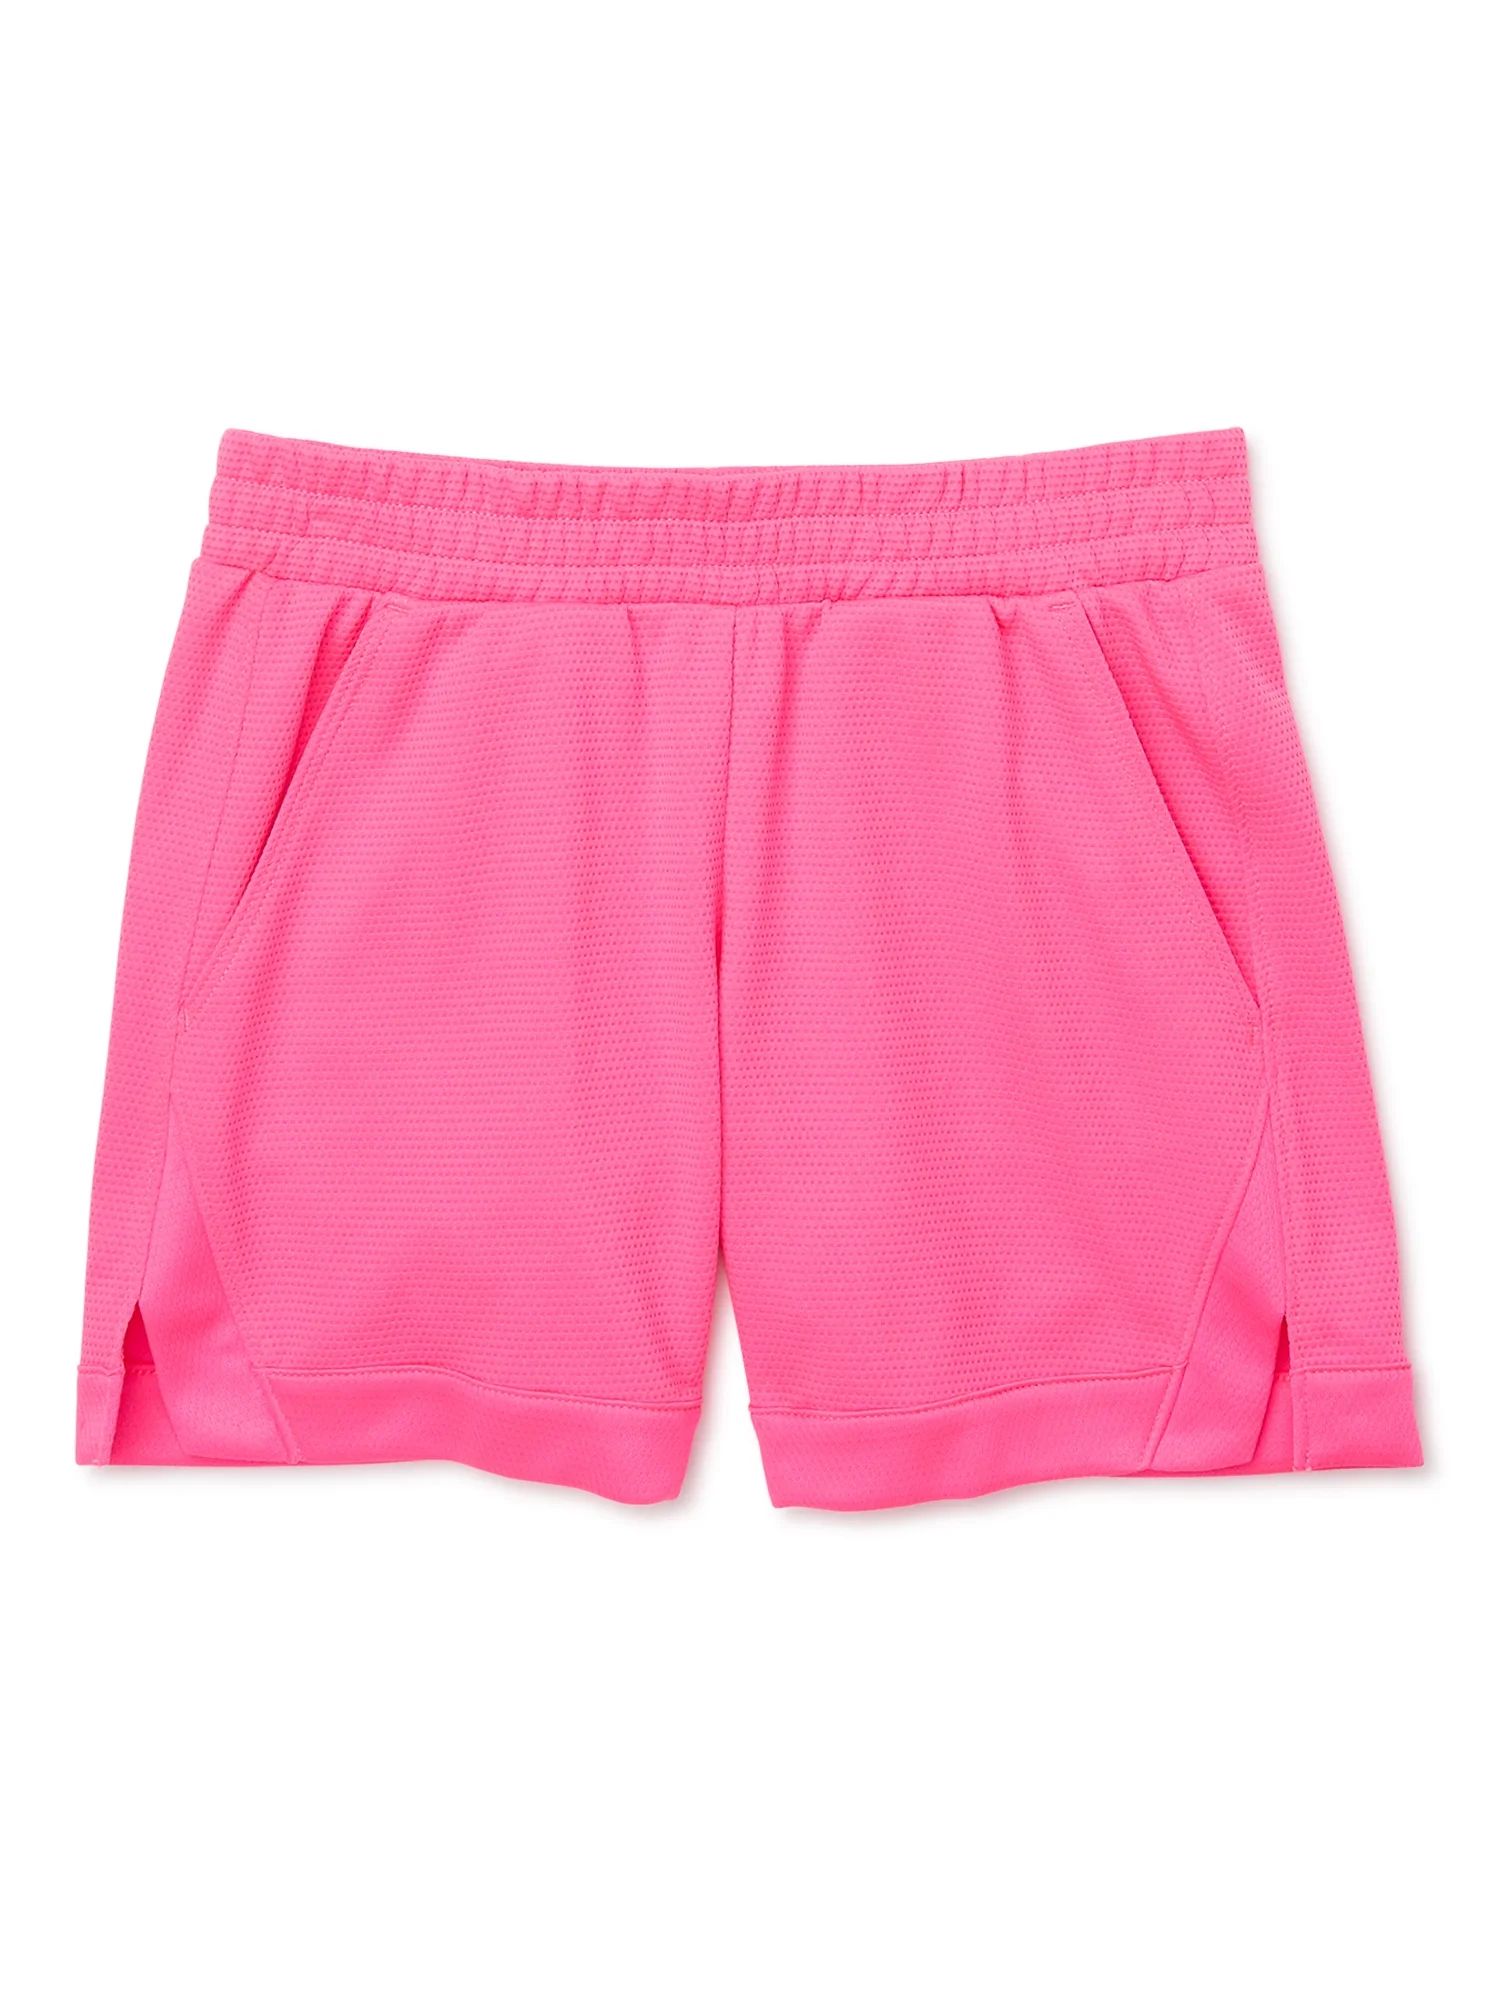 Athletic Works Girls Shorts, Sizes 4-18 & Plus | Walmart (US)